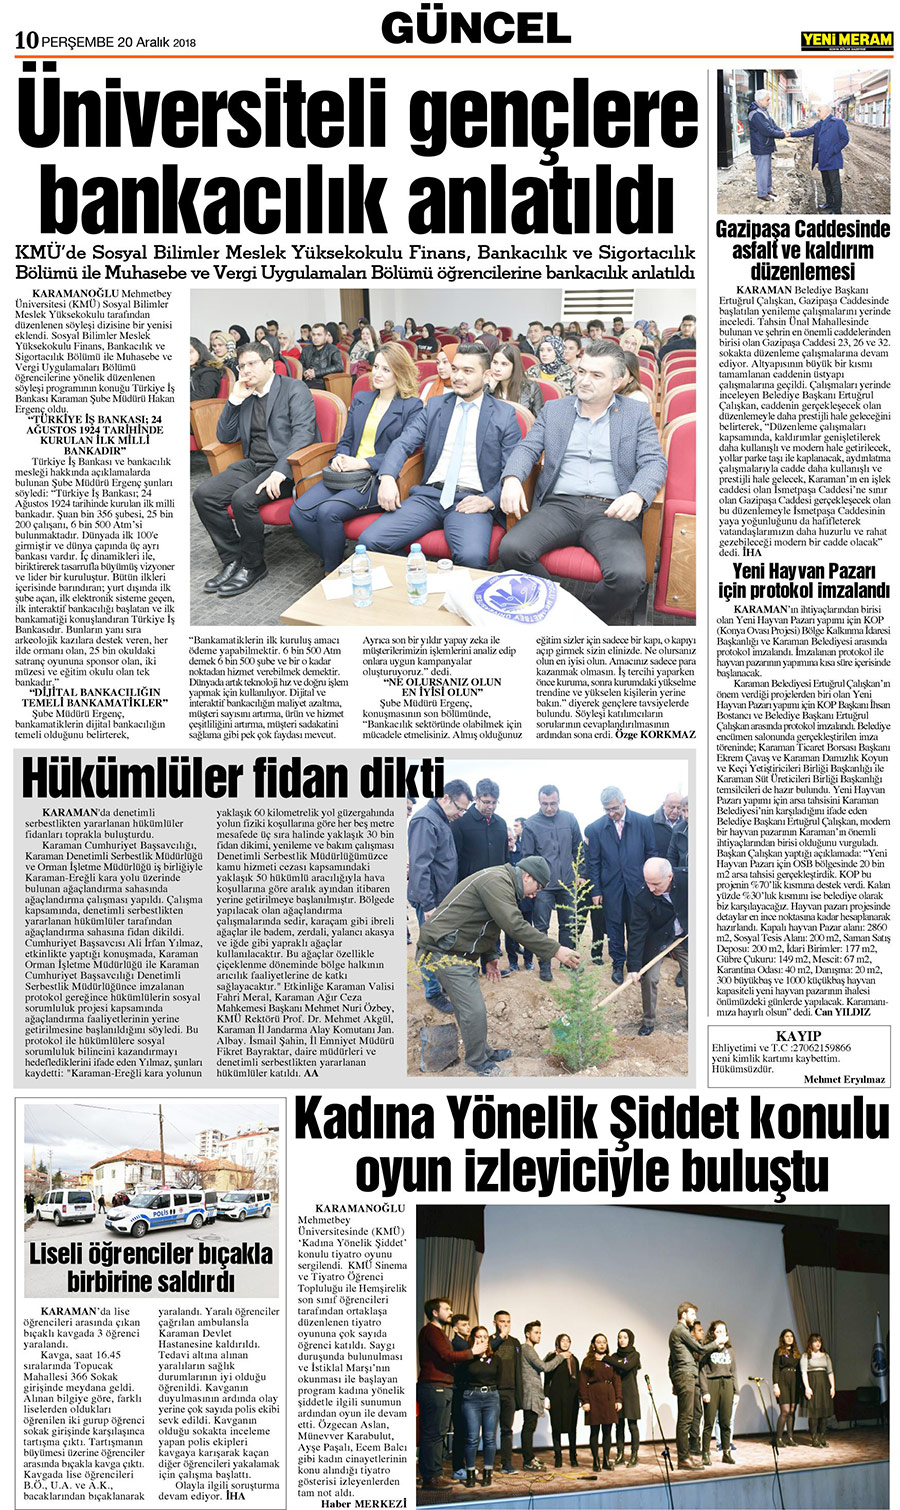 20 Aralık 2018 Yeni Meram Gazetesi